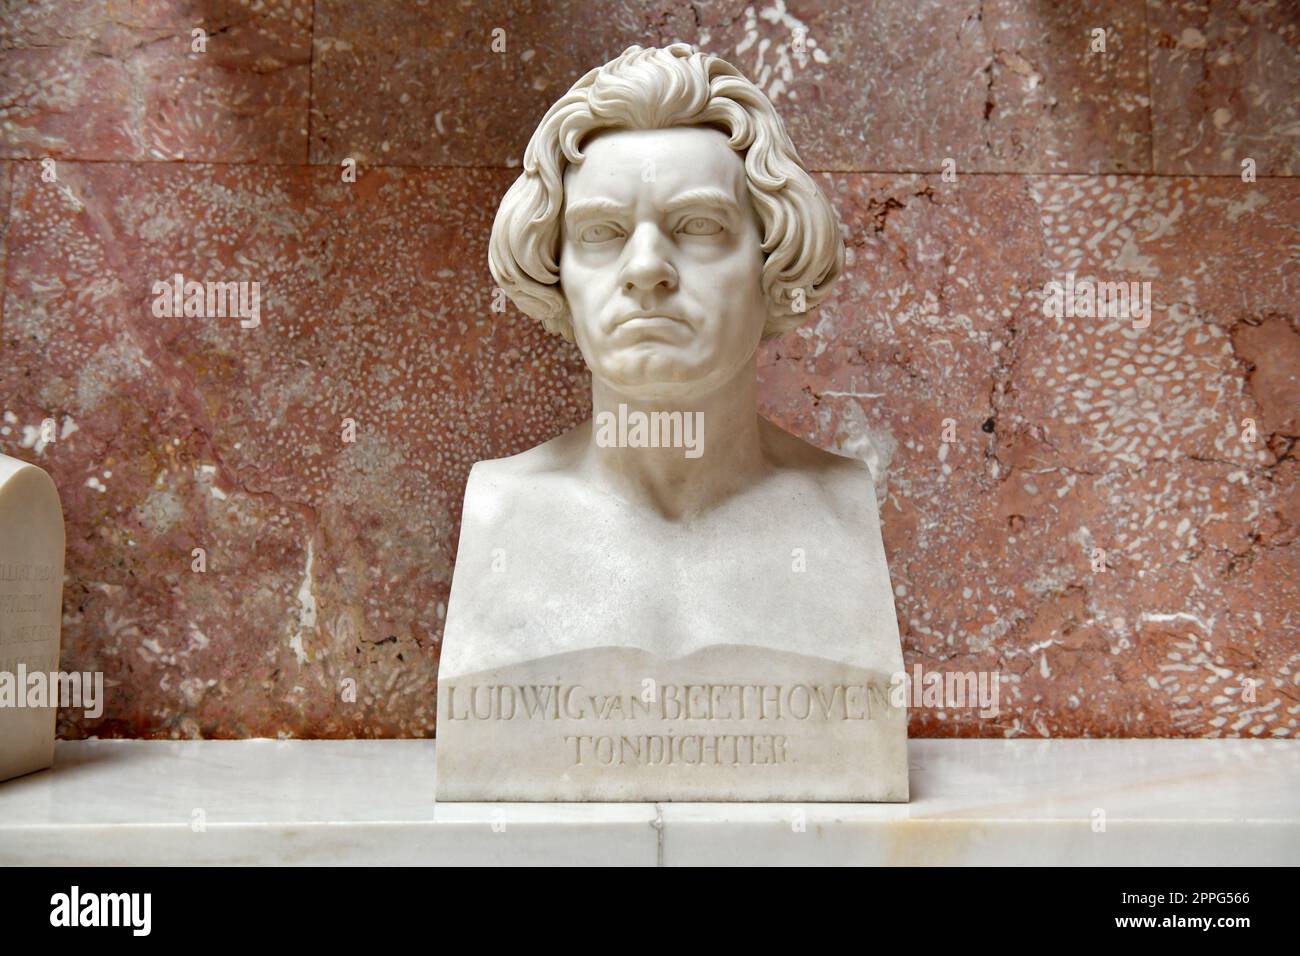 GedenkstÃ¤tte Walhalla in Bayern mit MarmorbÃ¼sten bedeutender deutscher PersÃ¶nlichkeiten - Walhalla memorial in Bavaria with marble busts of important German personalities Stock Photo